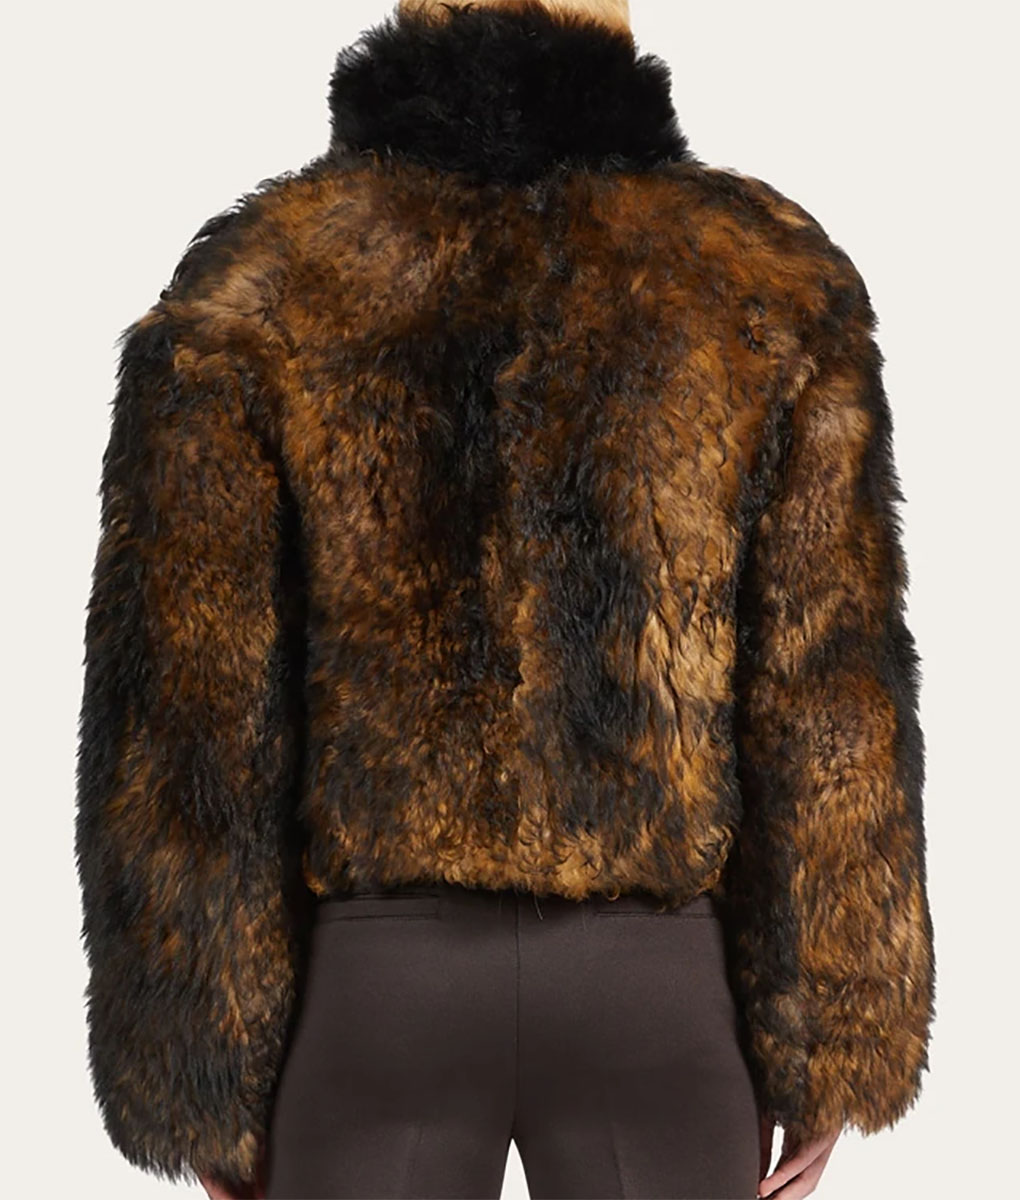 Hailey Bieber Brown Fur Jacket (6)